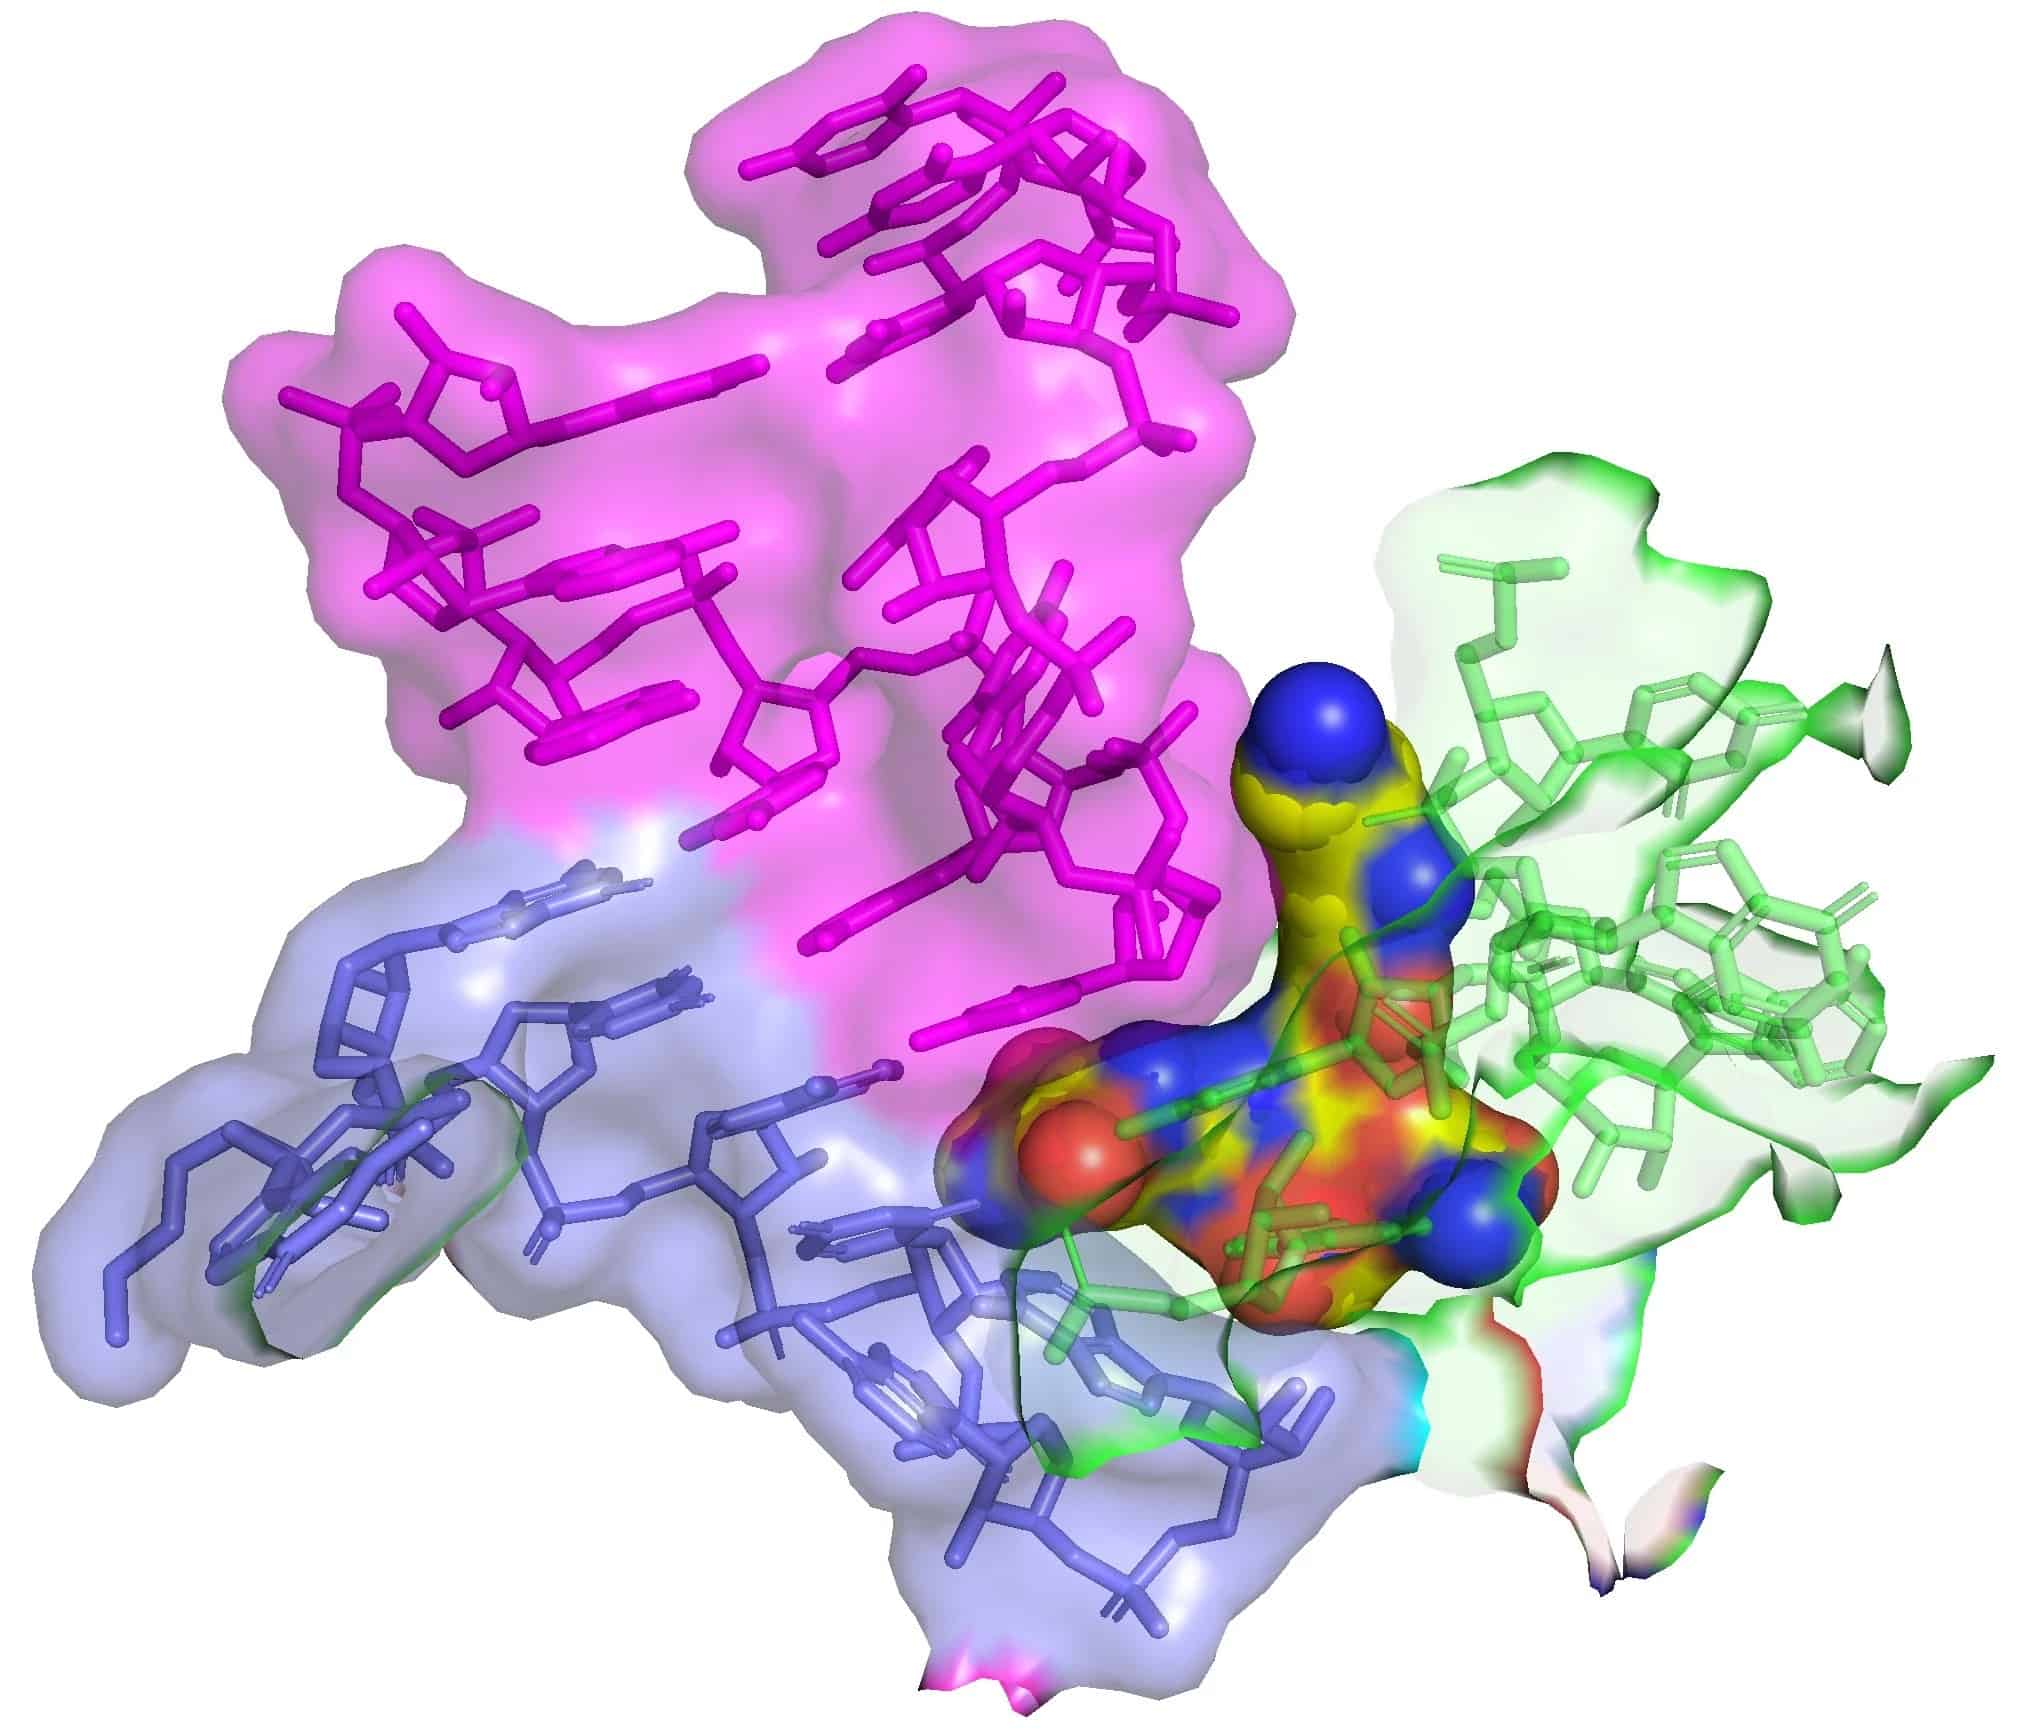 الستربتوثريسين-إف (الكرات الصفراء) المرتبط بجزيء الرنا الريبوسومي 16 إس (16S rRNA) (باللون الأخضر) الذي يعود إلى الريبوسوم البكتيري يدخل موقع فك التشفير حيث يرتبط الرنا الناقل (باللون الأرجواني) بشيفرة الرنا المرسال الوراثية (باللون الأزرق). يؤدي هذا التفاعل إلى انخفاض دقة تركيب البروتين (أخطاء في تسلسل البروتين) وموت الخلية البكتيرية. المصدر: جيمس كيربي، زوي واتسون (Zoe L .Watson) وآخرون، 2023، مجلة إي لايف.